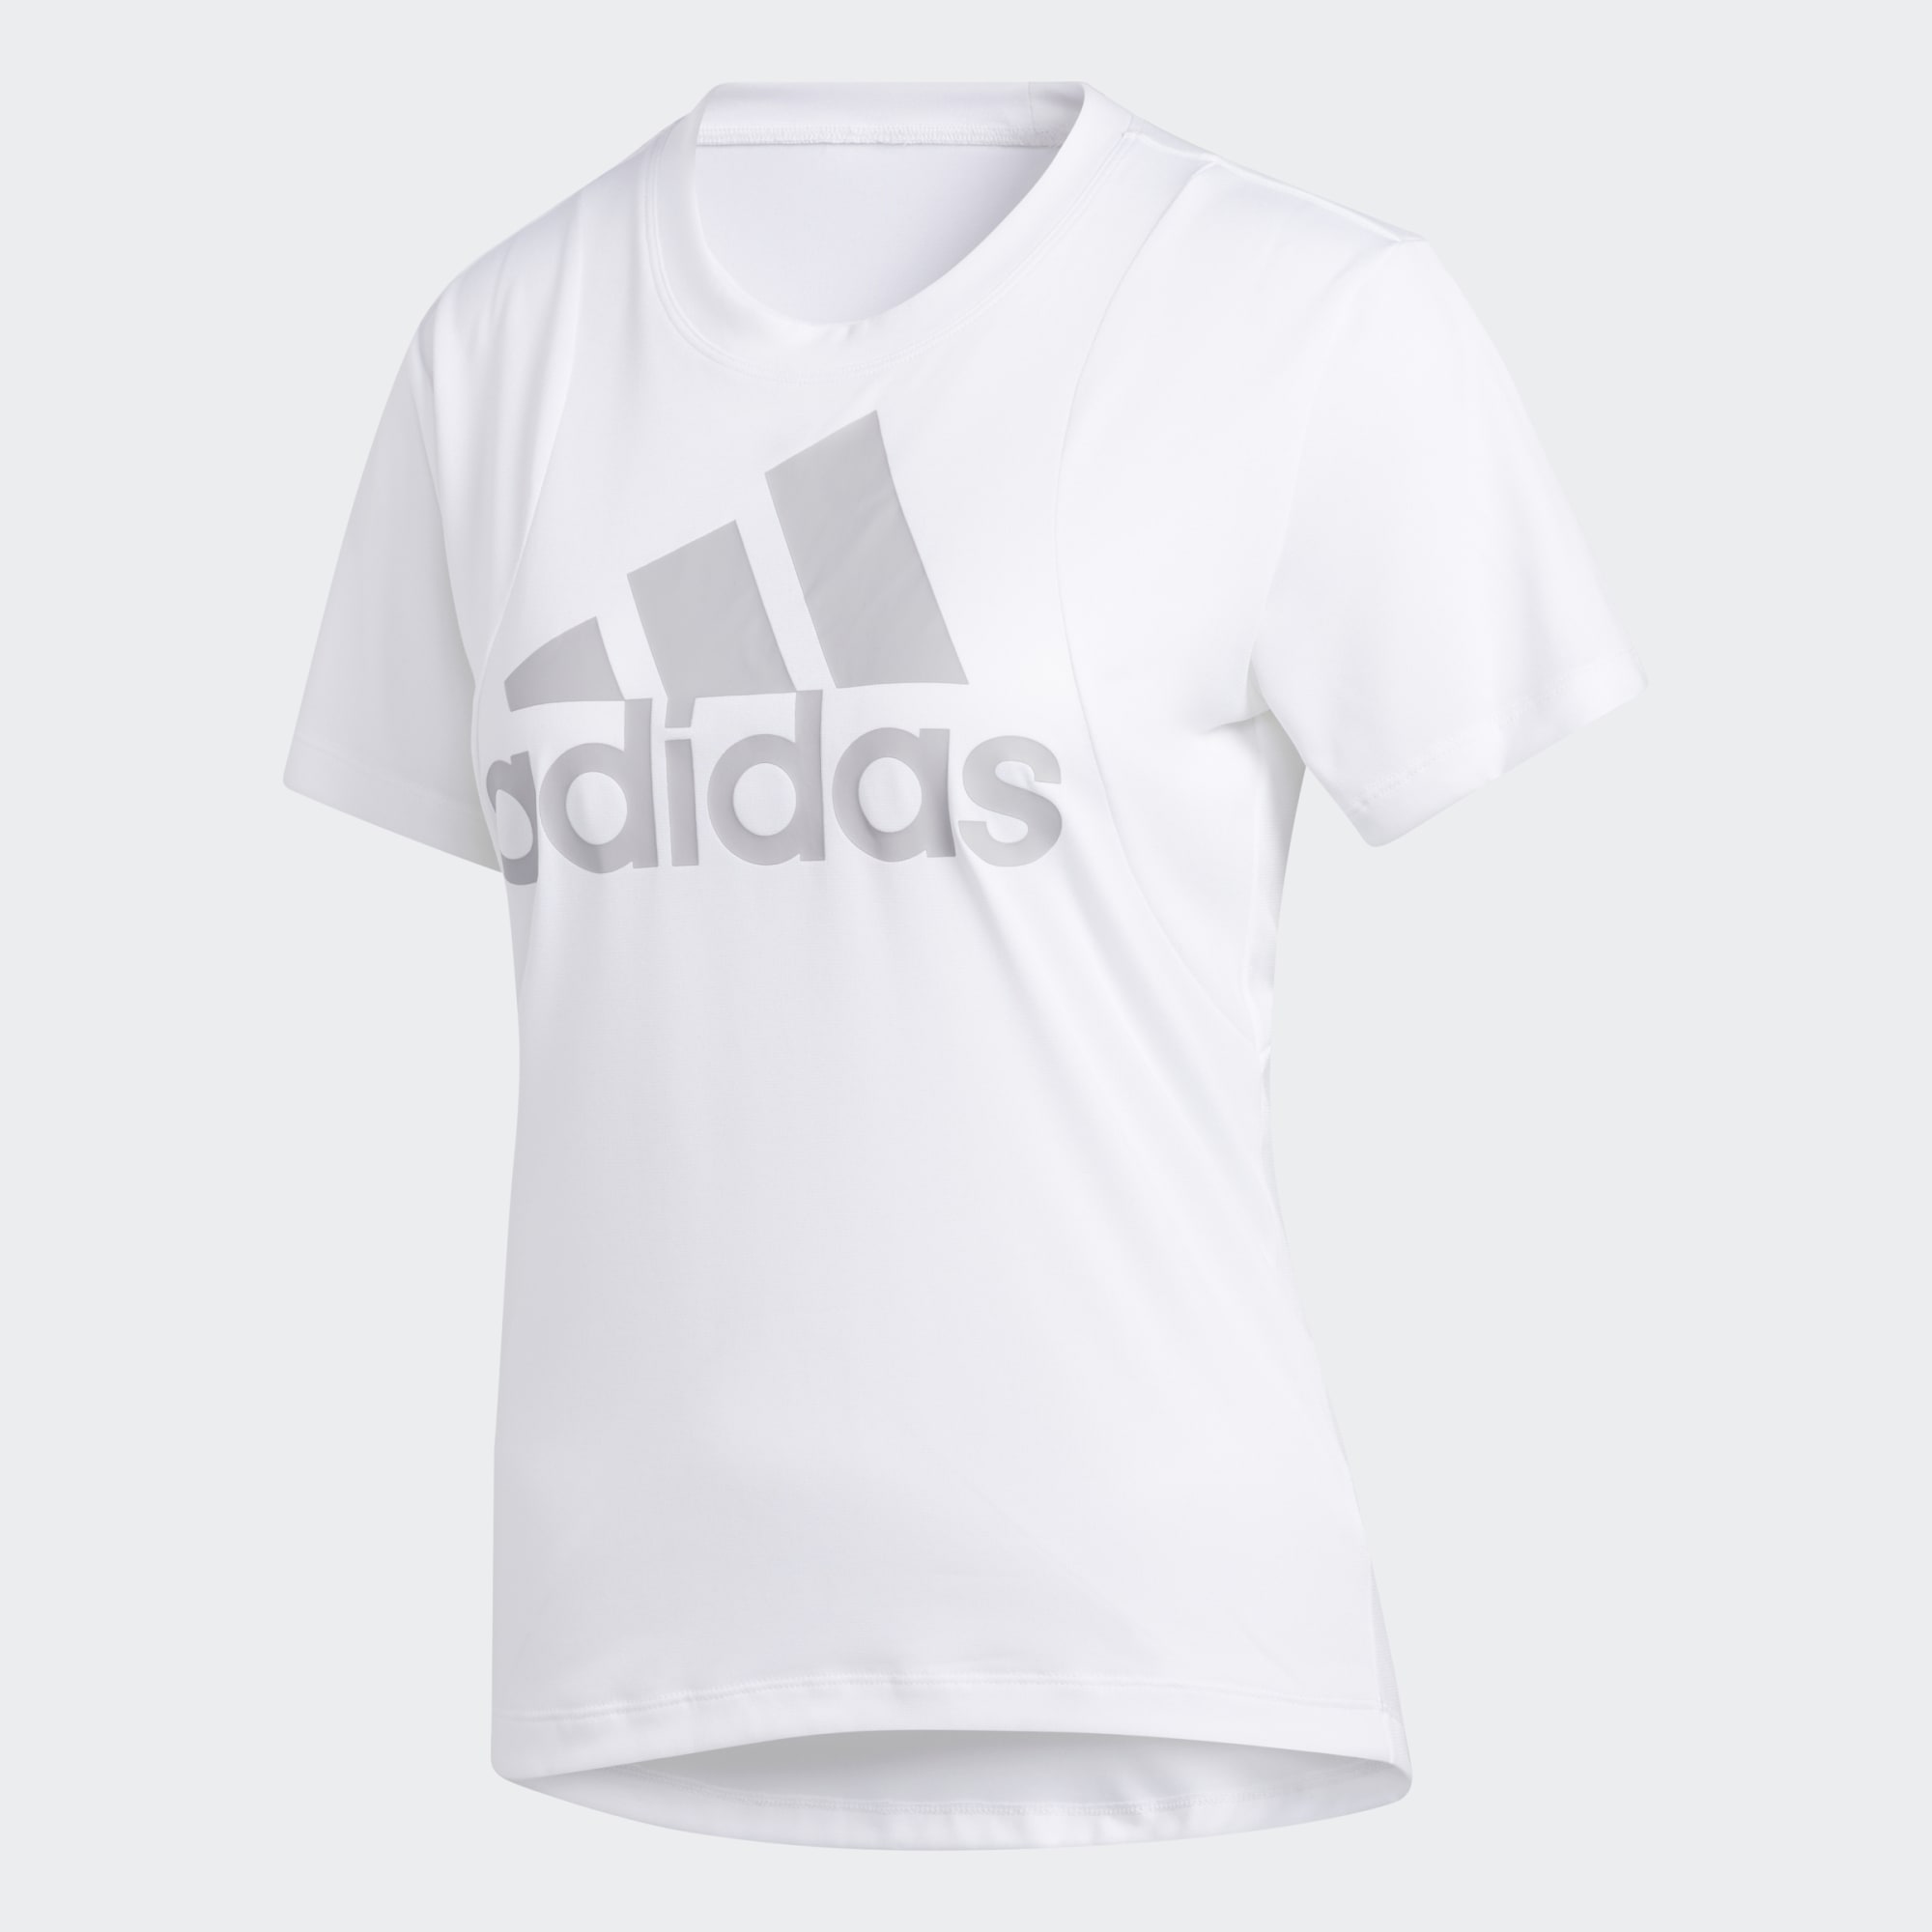 Футболка Adidas для женщин, GC8182, размер S